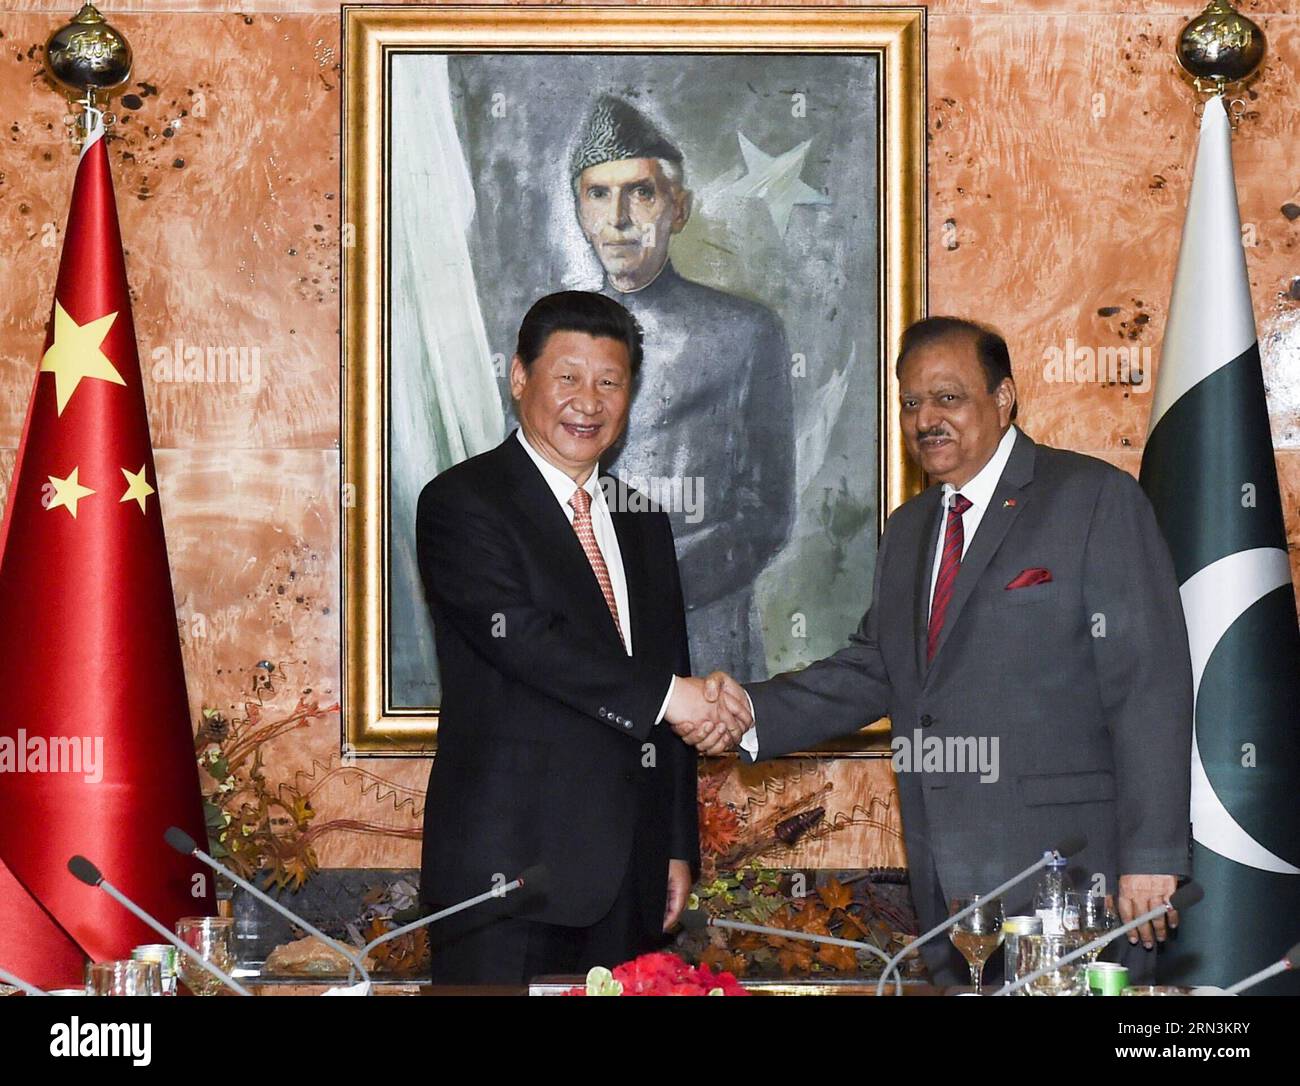 (150421) -- ISLAMABAD, 21 de abril de 2015 -- El presidente chino Xi Jinping (izq.) le da la mano al presidente paquistaní Mamnoon Hussain en Islamabad, Pakistán, 21 de abril de 2015. ) (ZHS) PAKISTÁN-CHINA-XI JINPING-REUNIÓN LIxXUEREN PUBLICATIONxNOTxINxCHN Islamabad Abril 21 2015 El presidente chino Xi Jinping l da la mano al presidente paquistaní Hussain en Islamabad Pakistán Abril 21 2015 Pakistán China Reunión Xi Jinping LixXueren PUBLICATIONxNOTxINxCHN Foto de stock